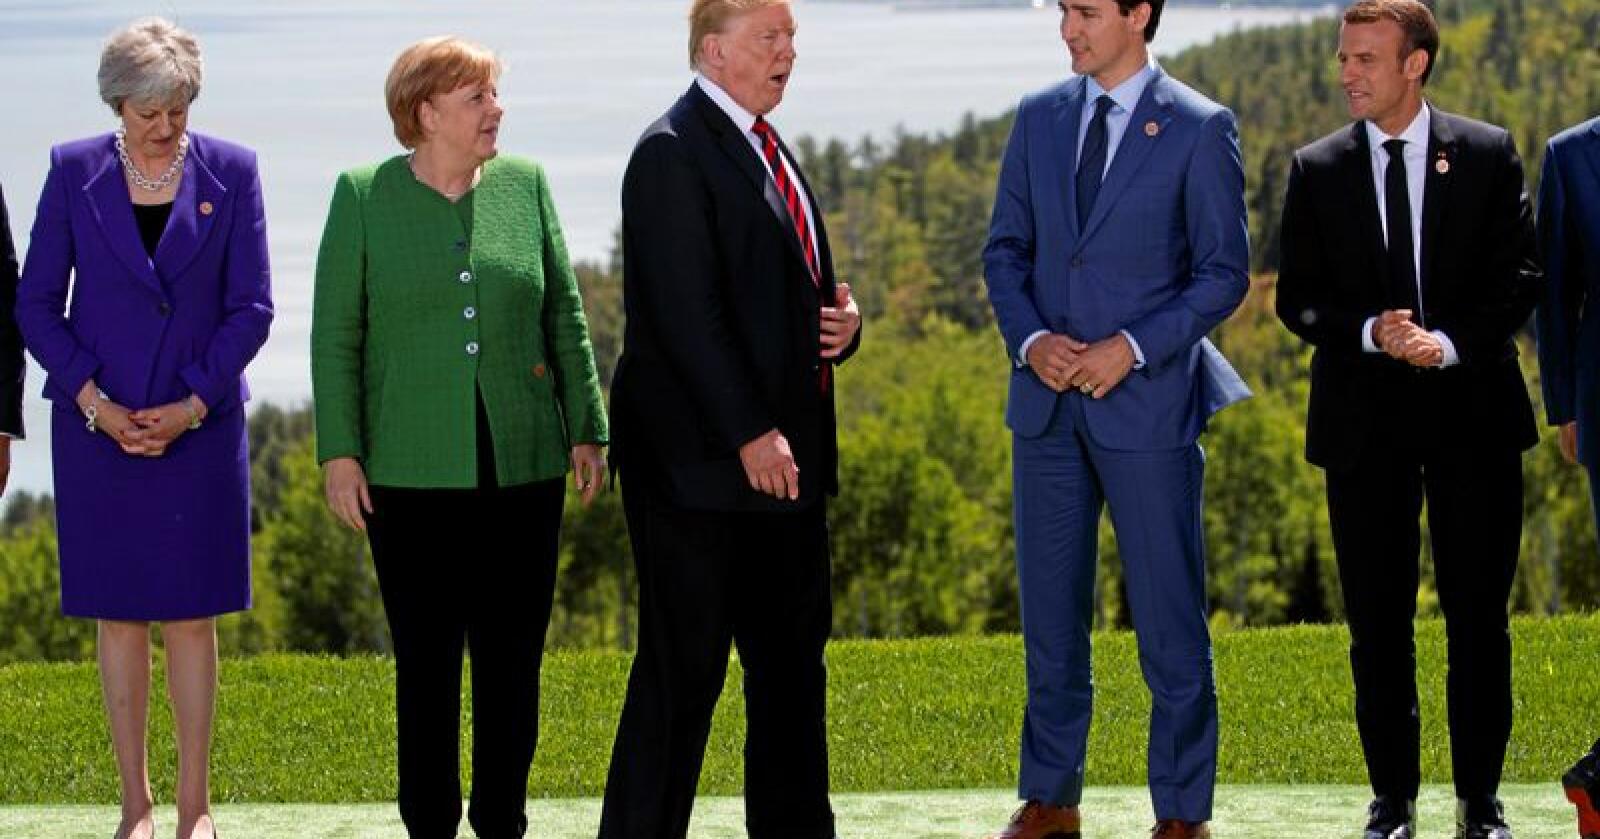 G7-stemning: På bildet er Trump dessverre ikke i ferd med å demonstrere Michael Jackson-danseteknikken «moonwalking» for de øvrige G7-statslederne. Foto: Evan Vucci / AP / NTB Scanpix